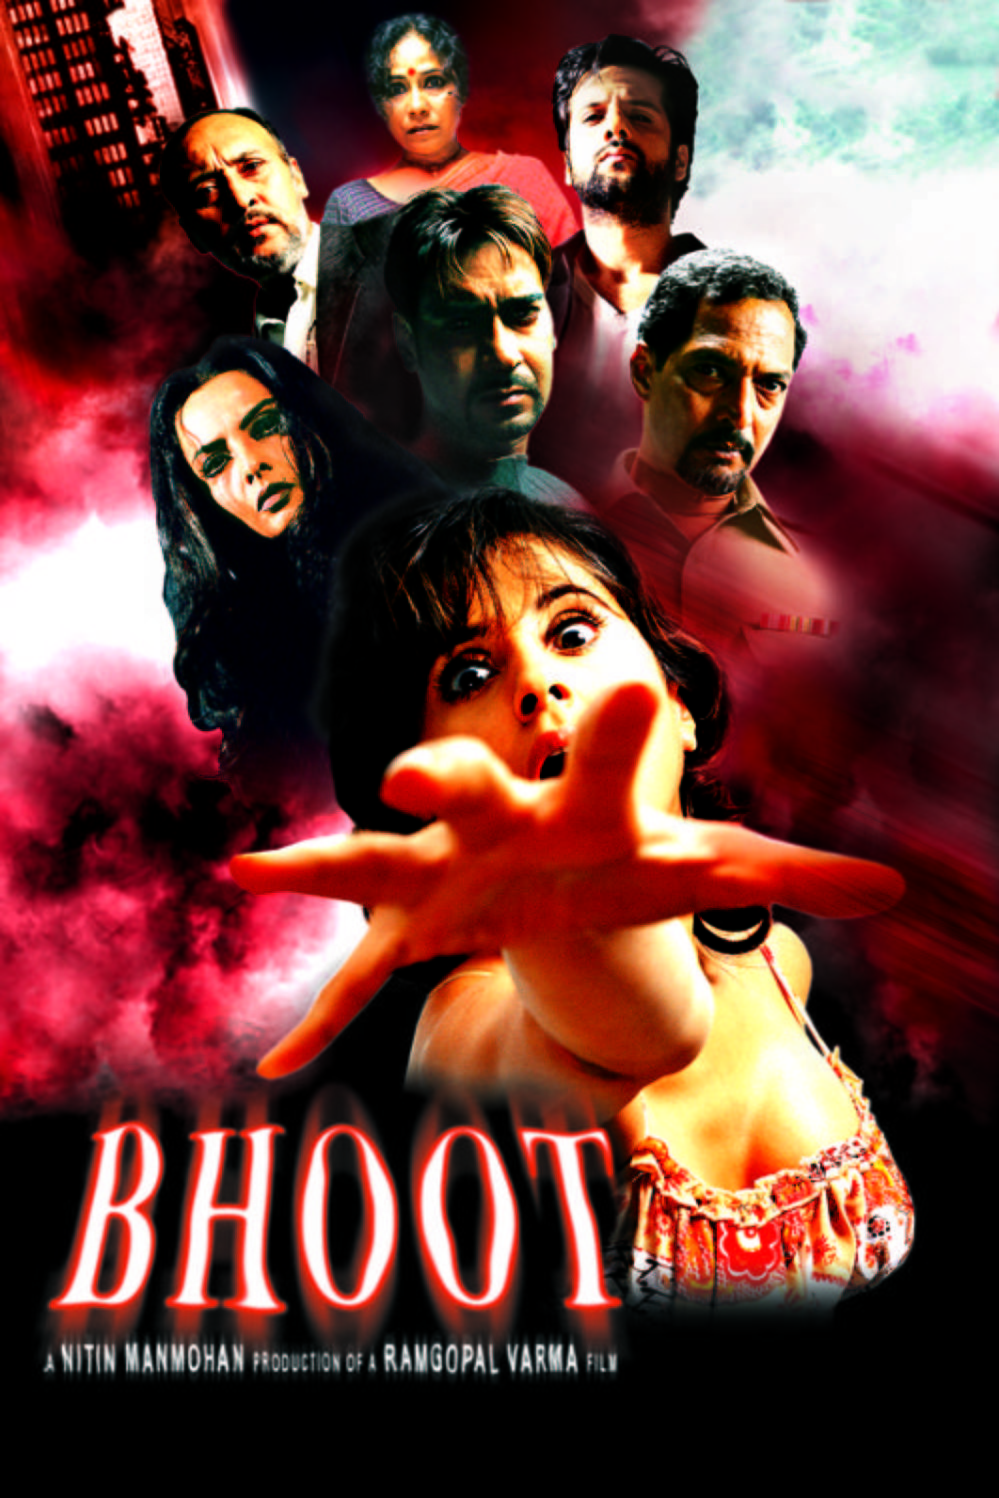 L'affiche originale du film Bhoot en Hindi